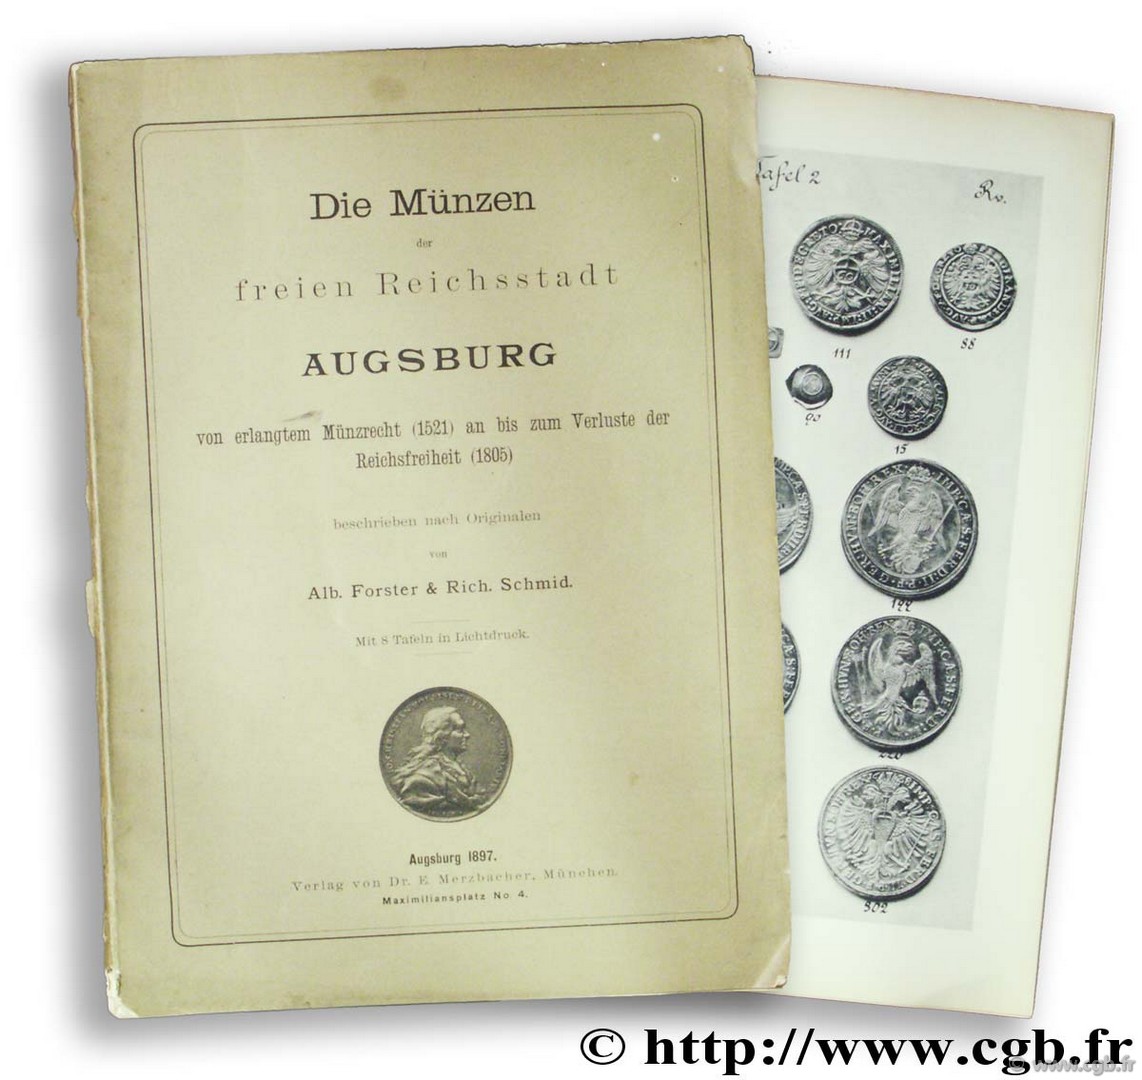 Die Münzen der freien Reichsstadt Augsburg von erlangtem Münzrecht (1521) an bis zum Verluste der Reichsfreiheit (1805) FORSTER A., SCHMID R.